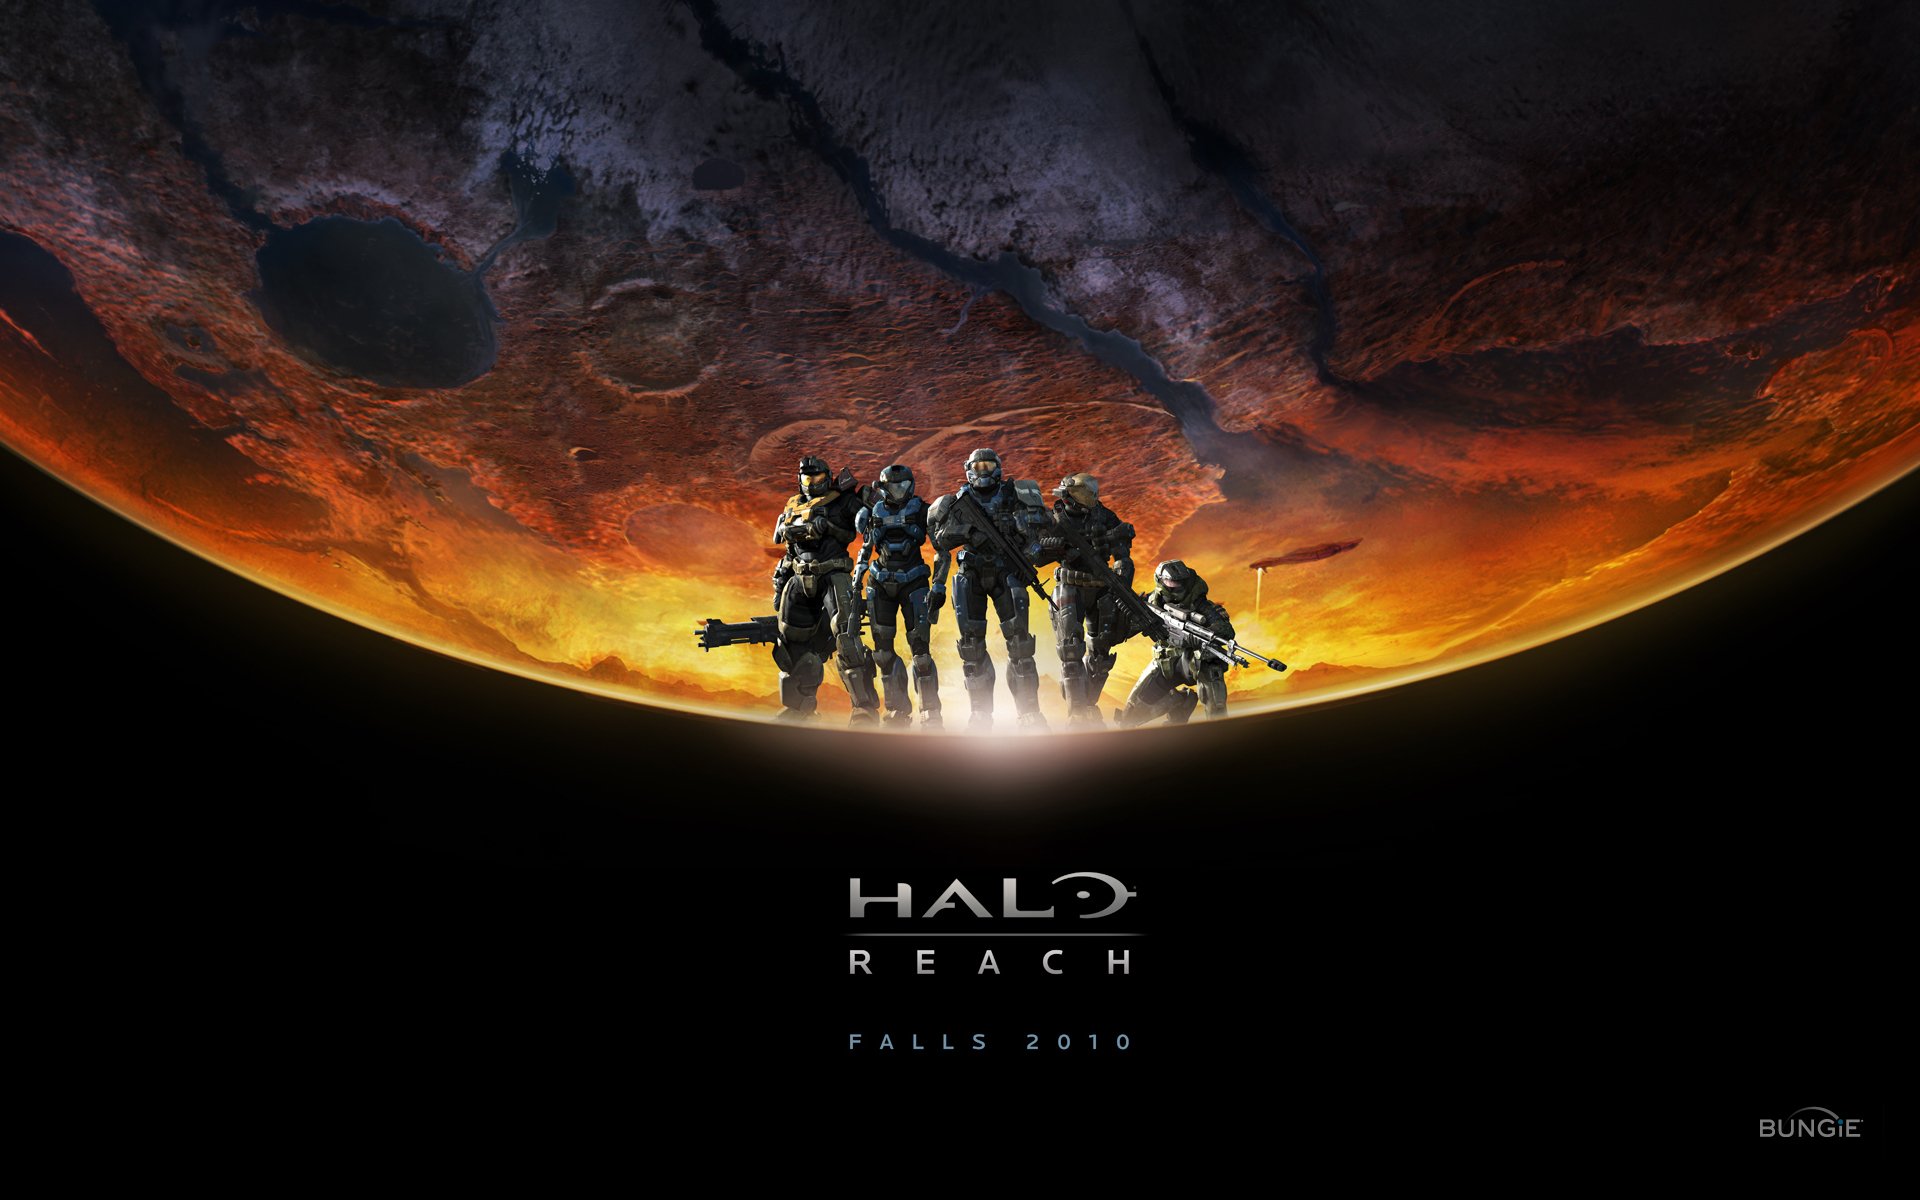 Video game Halo Reach đã trở nên quen thuộc với nhiều người yêu thích game. Hãy xem hình nền mới nhất liên quan để cảm nhận được vẻ đẹp đầy sống động của trò chơi này. Hình ảnh sắc nét và rực rỡ màu sắc sẽ khiến cho trải nghiệm chơi game thêm phần thú vị và độc đáo. Xem hình ảnh liên quan và trải nghiệm khoảnh khắc tuyệt vời với Halo Reach.